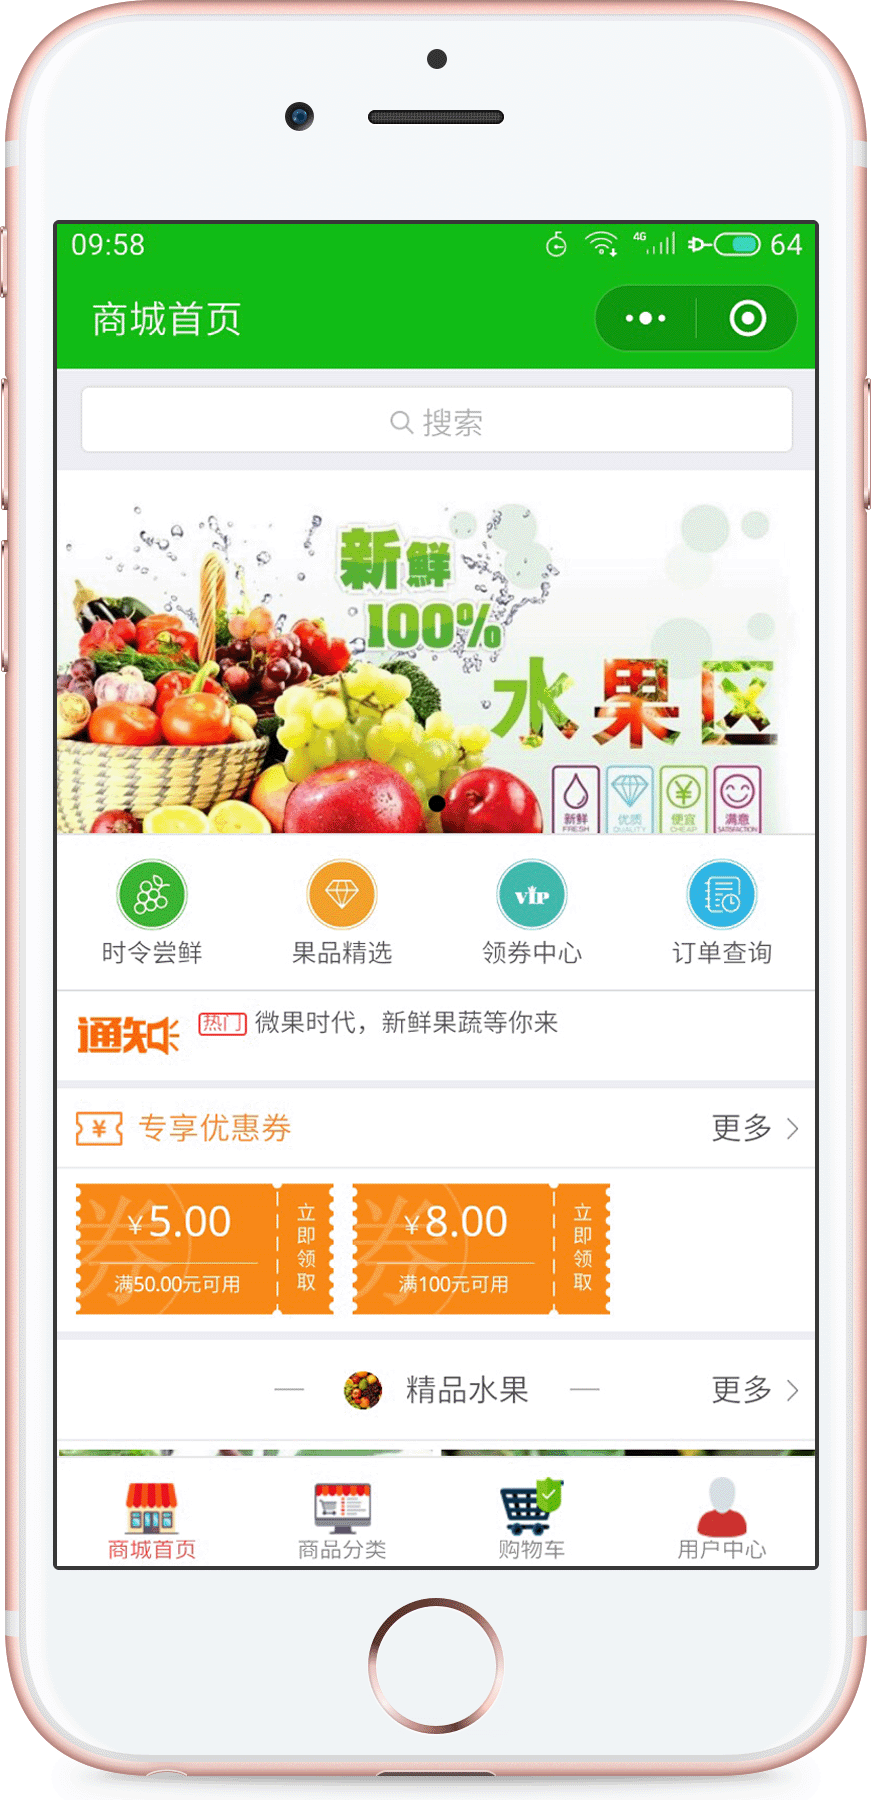 上海微果时代案例展示最便宜